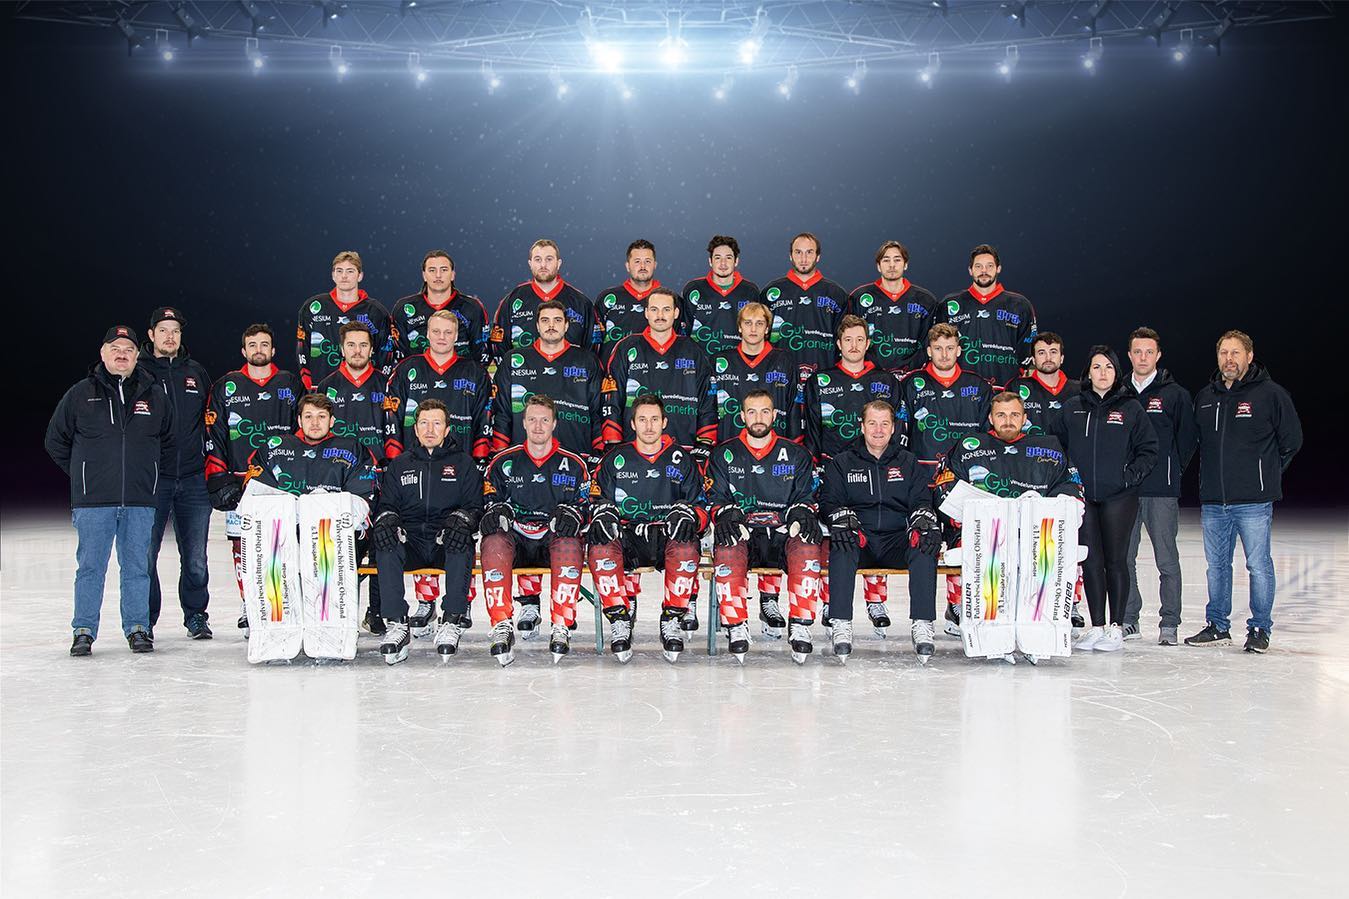 🔥 TSV Peißenberg Miners Team 2022/2023 🔥

Foto (c) W. Lindner 

#hockey #eishockey #sport #lvmkevinfischer #sportsponsoring #peissenberg #bayern #bayernliga 

„Miners - Meine Heimat.Mein Team.Unsere Leidenschaft.“